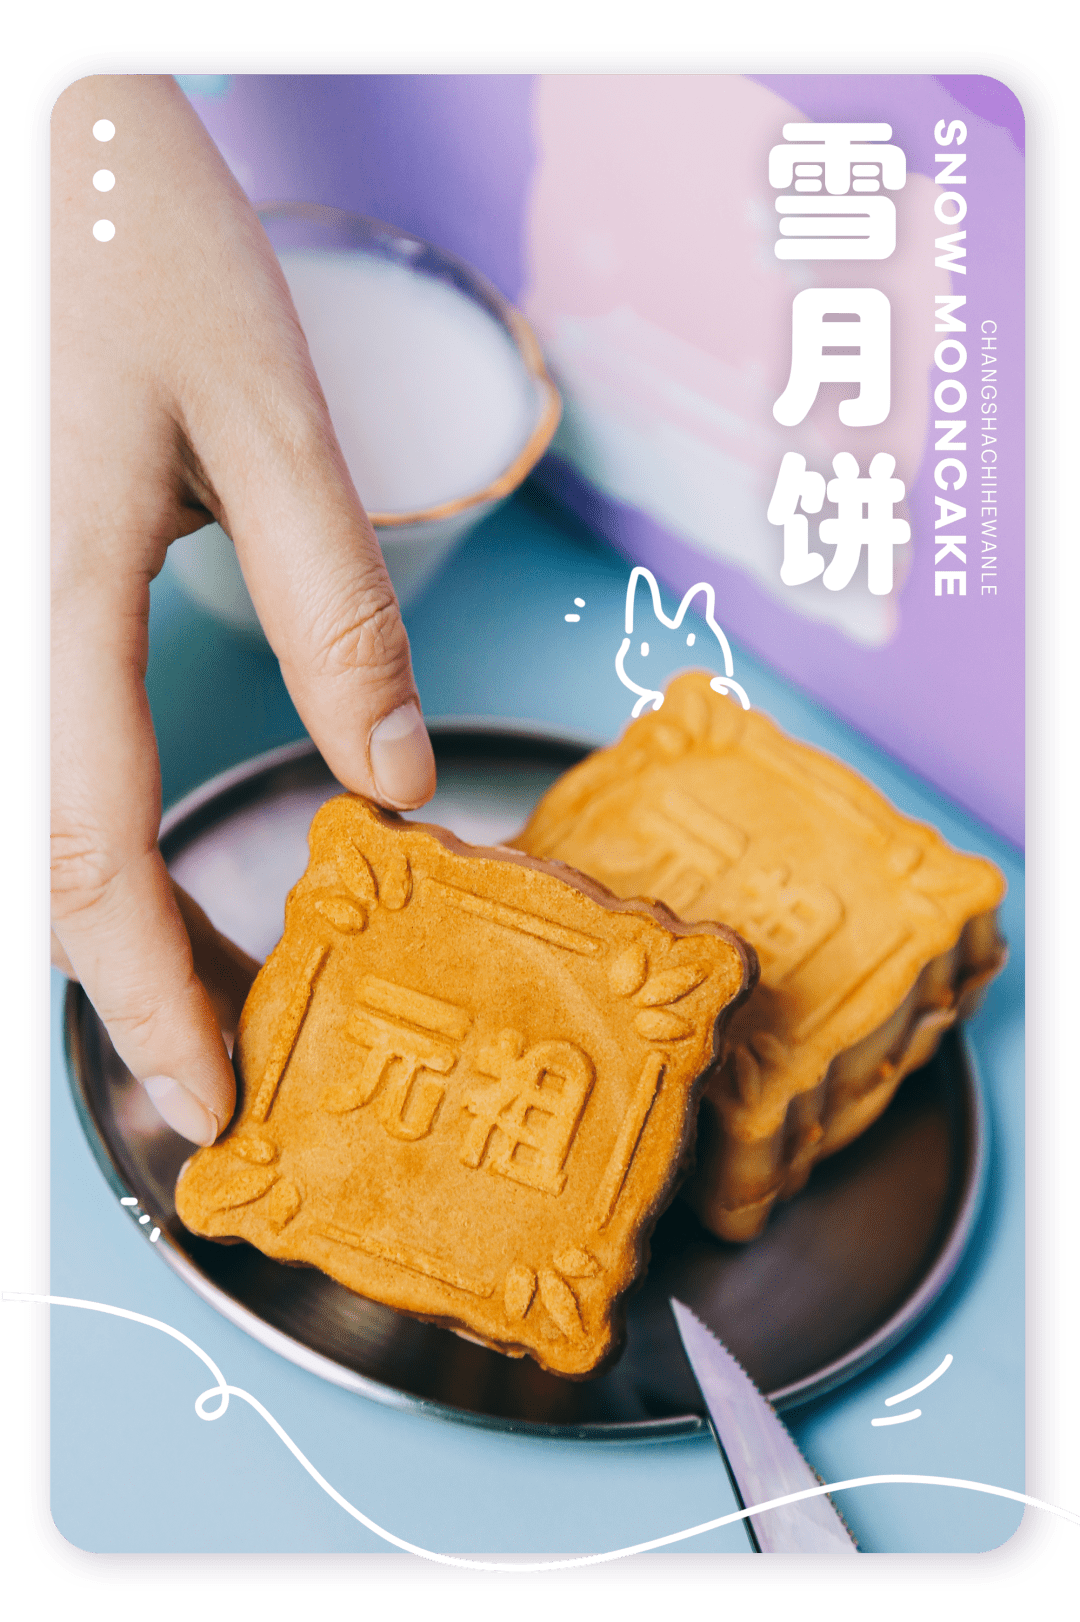 元祖雪月饼广告图片